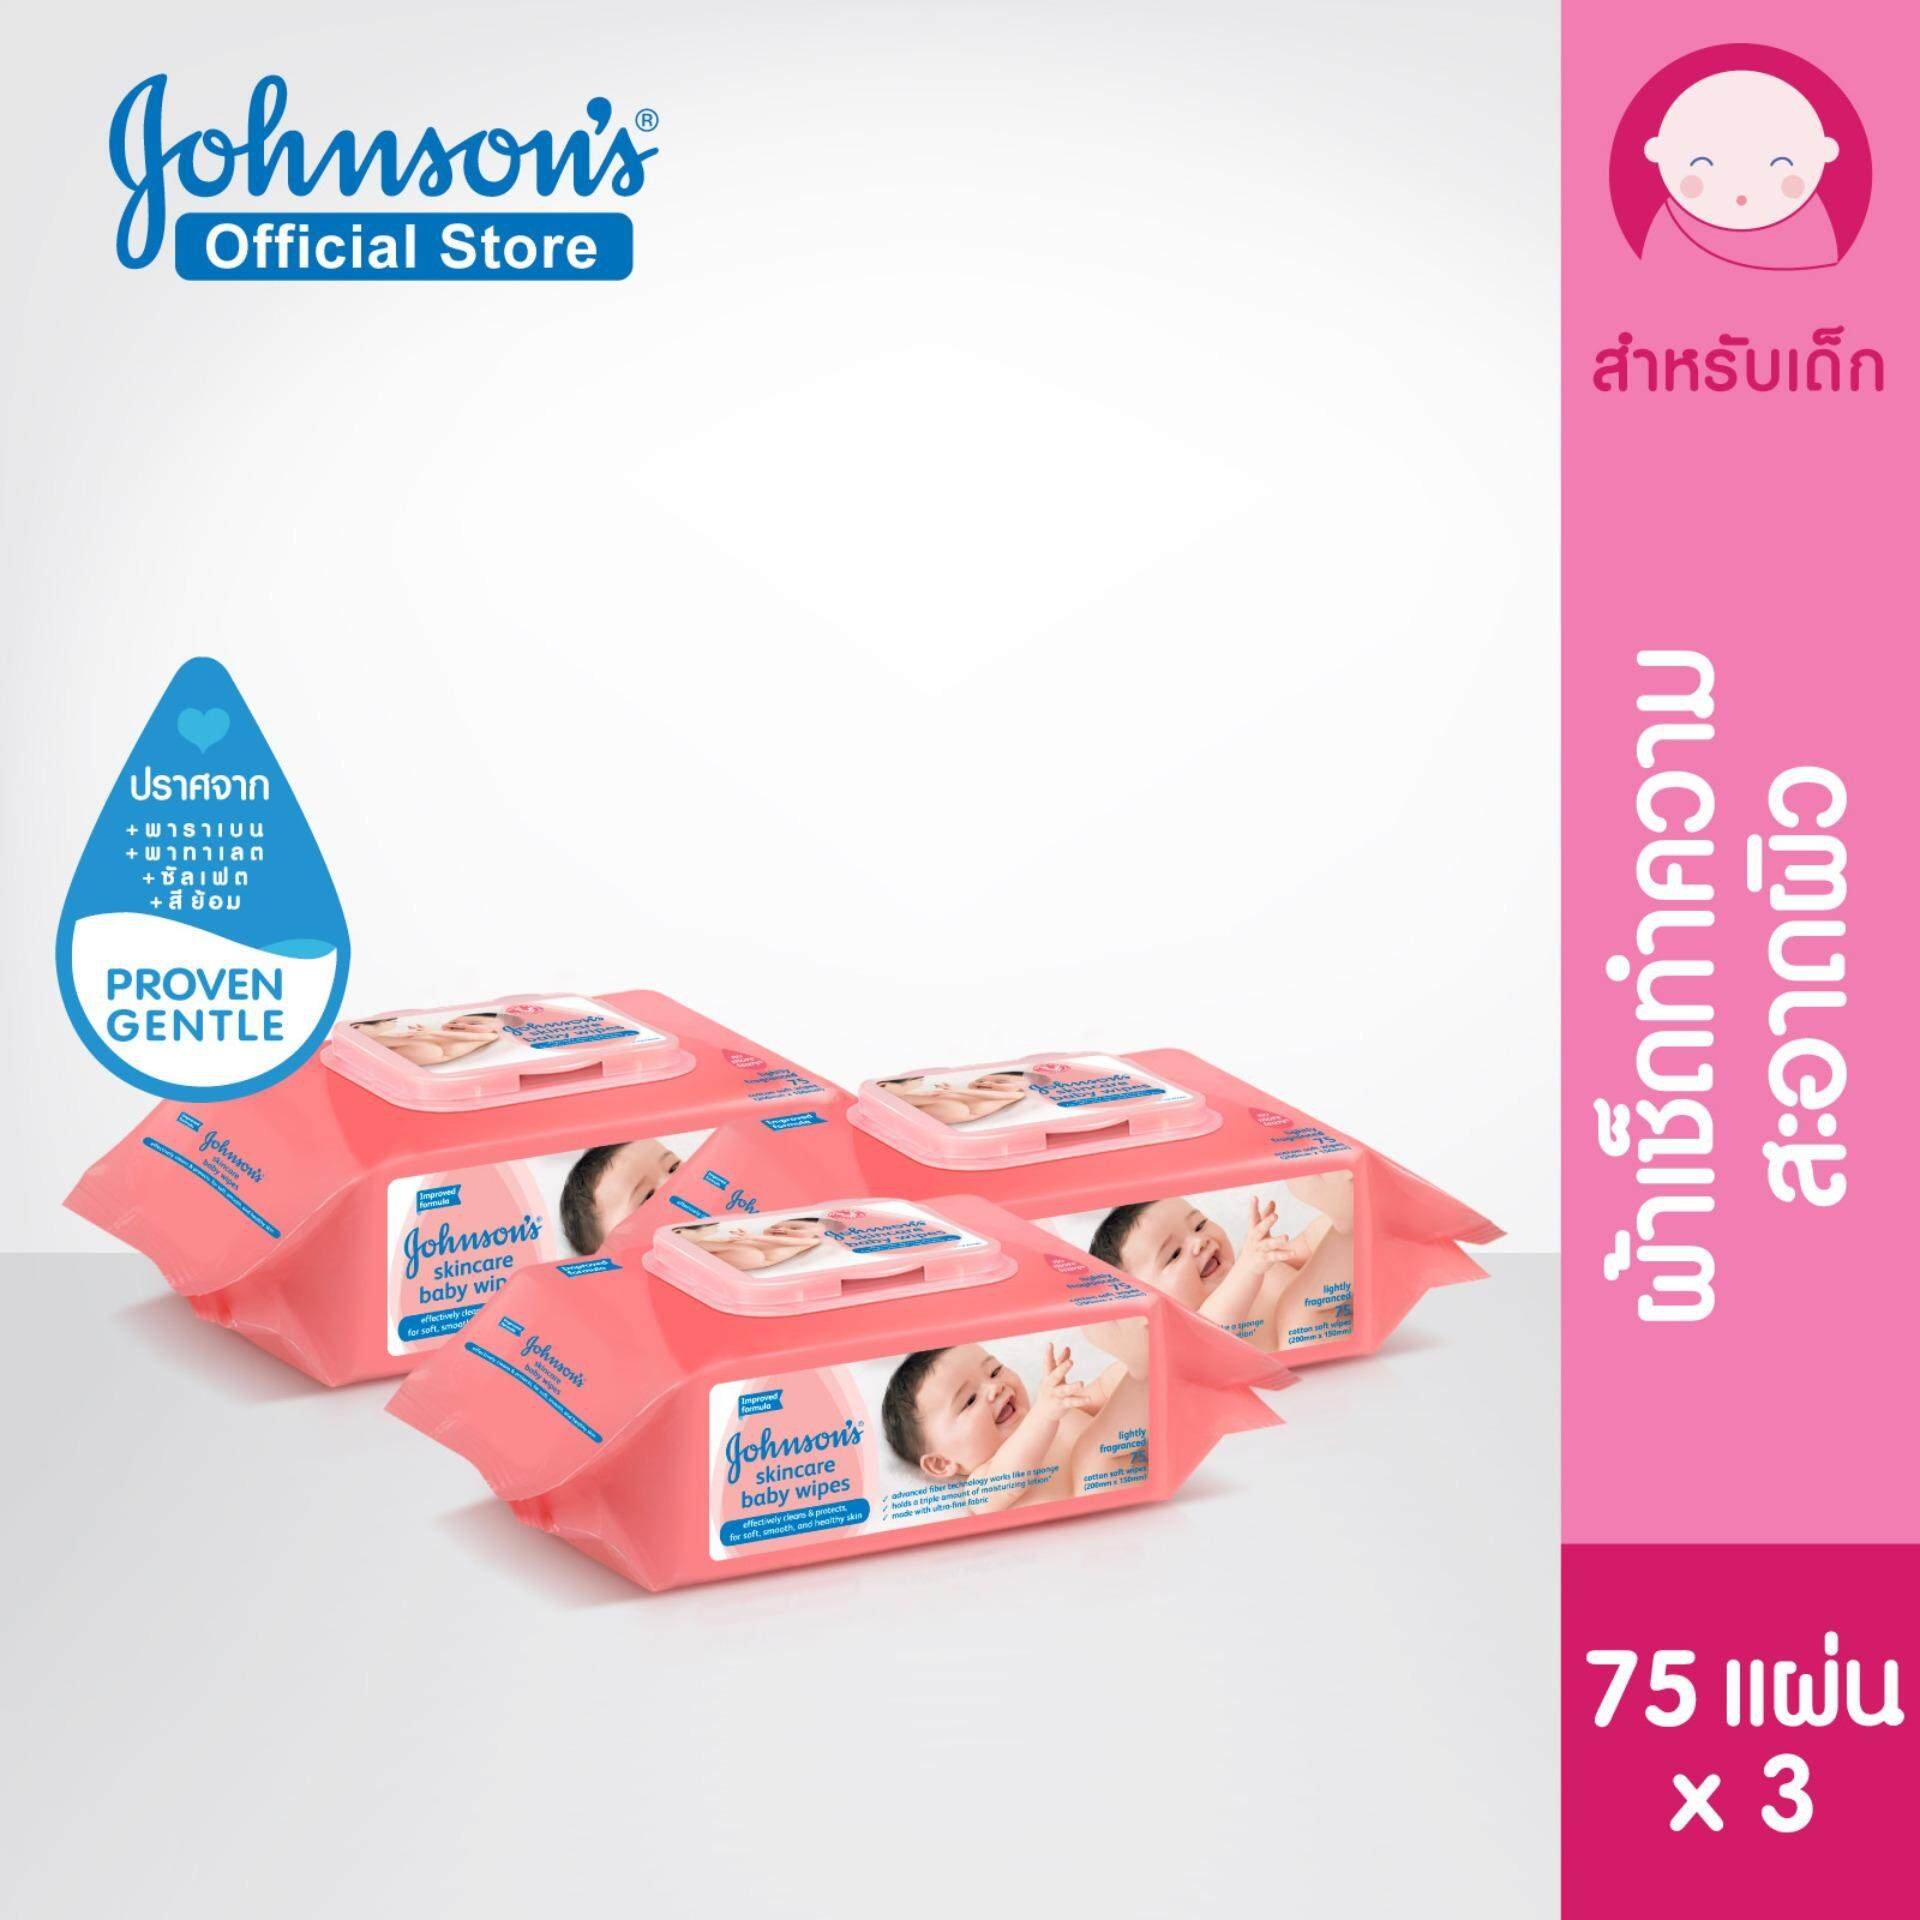 จอห์นสัน เบบี้ ทิชชู่เปียก เบบี้ ไวพ์ 75 แผ่น x 3 Johnson's Baby Skincare Baby wipes 75 pcs. X 3